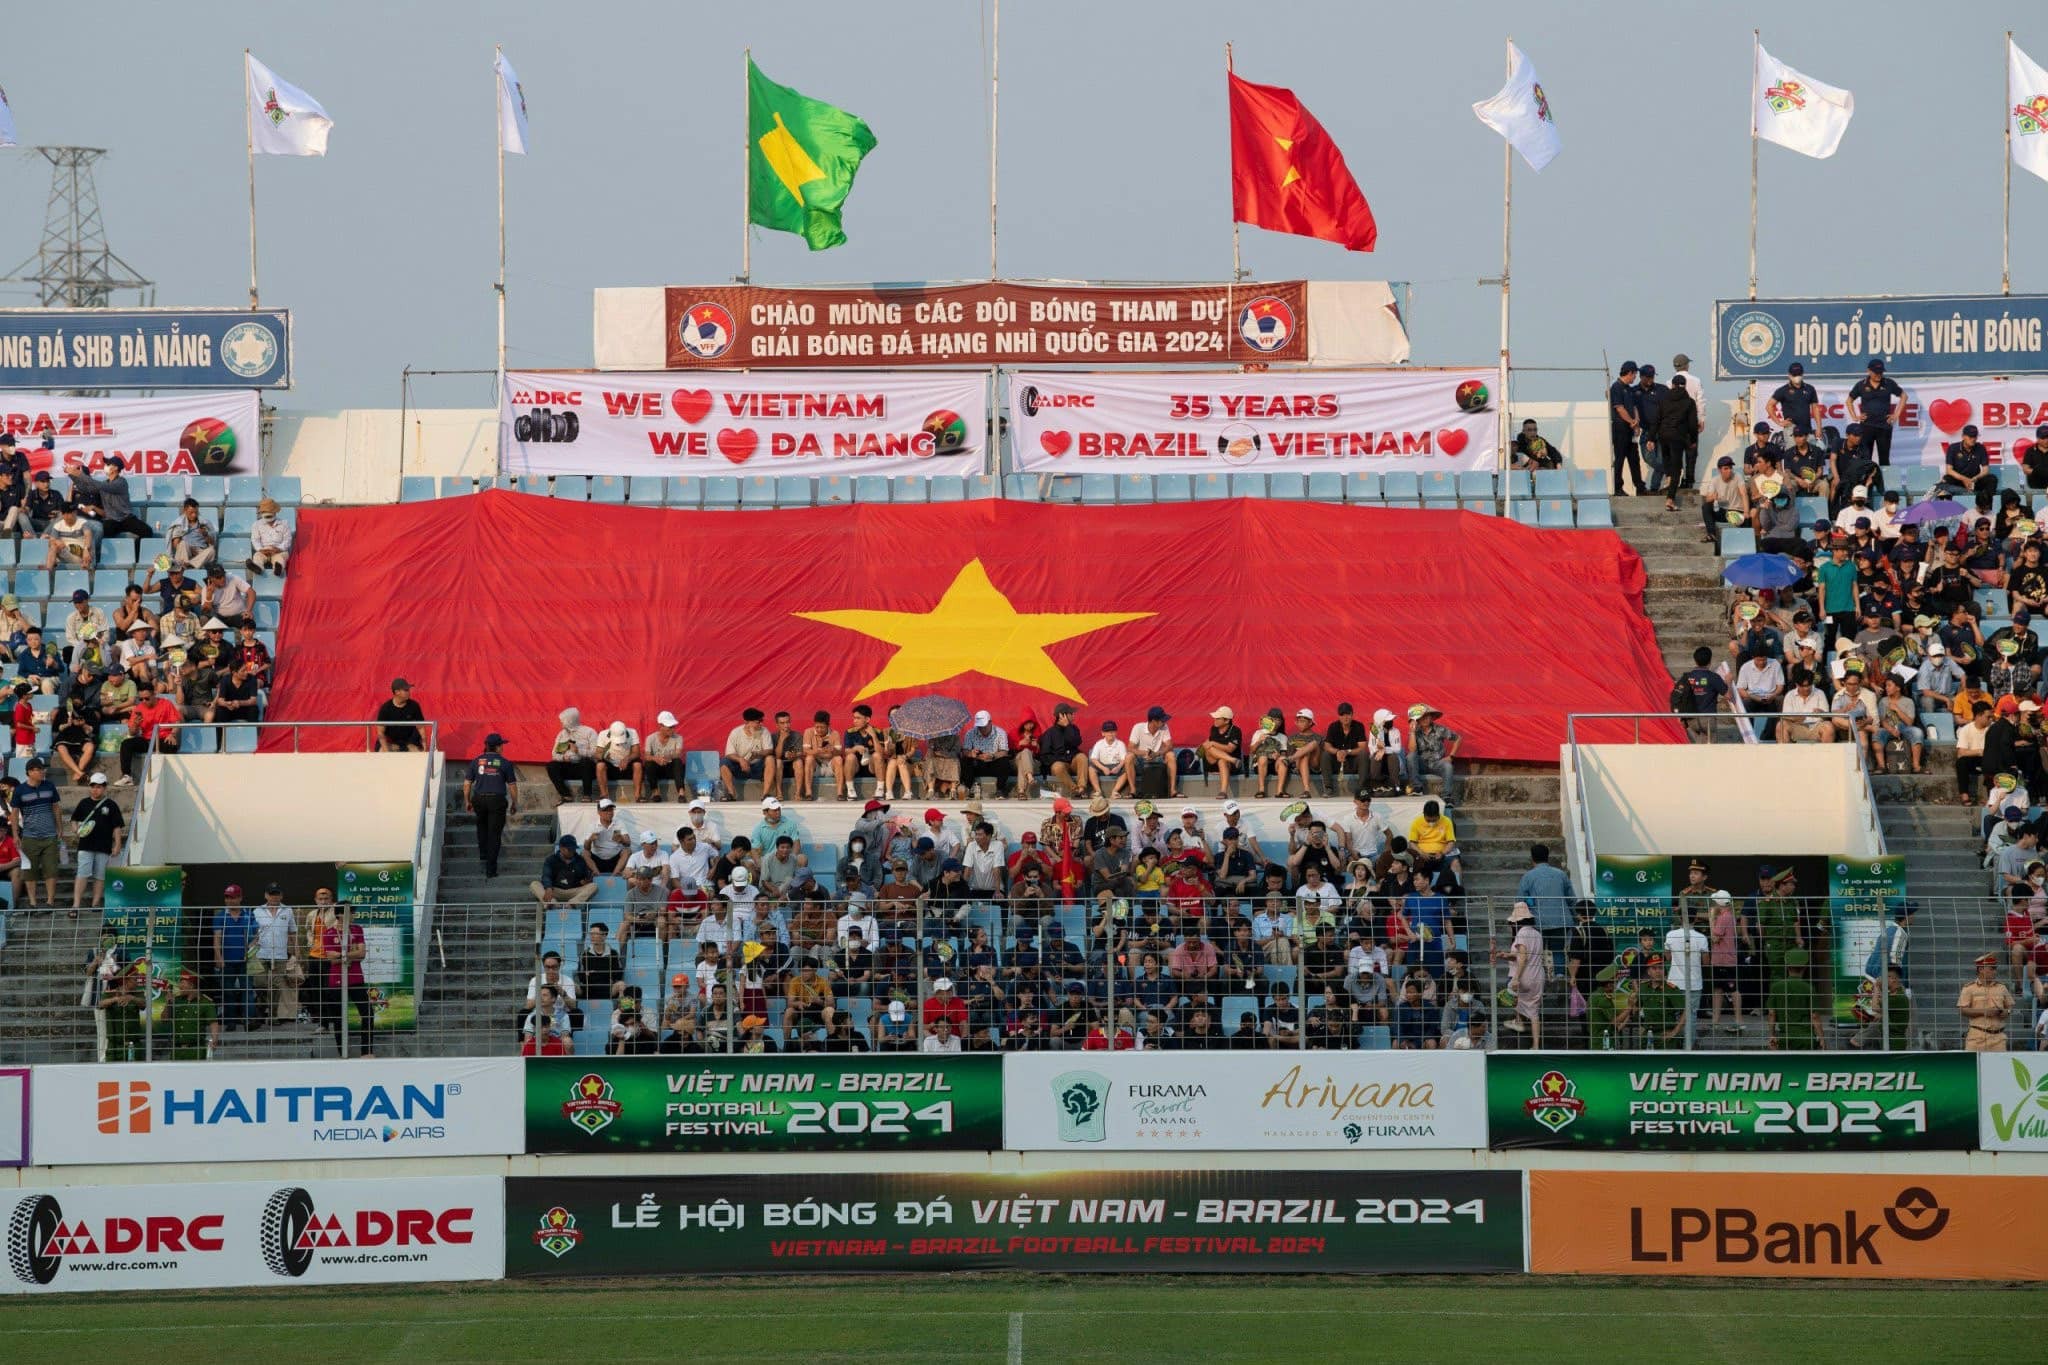 Sự kiện thu hút hàng nghìn người hâm mộ bóng đá và khách du lịch tham dự, hòa mình vào không khí bóng đá cuồng nhiệt.